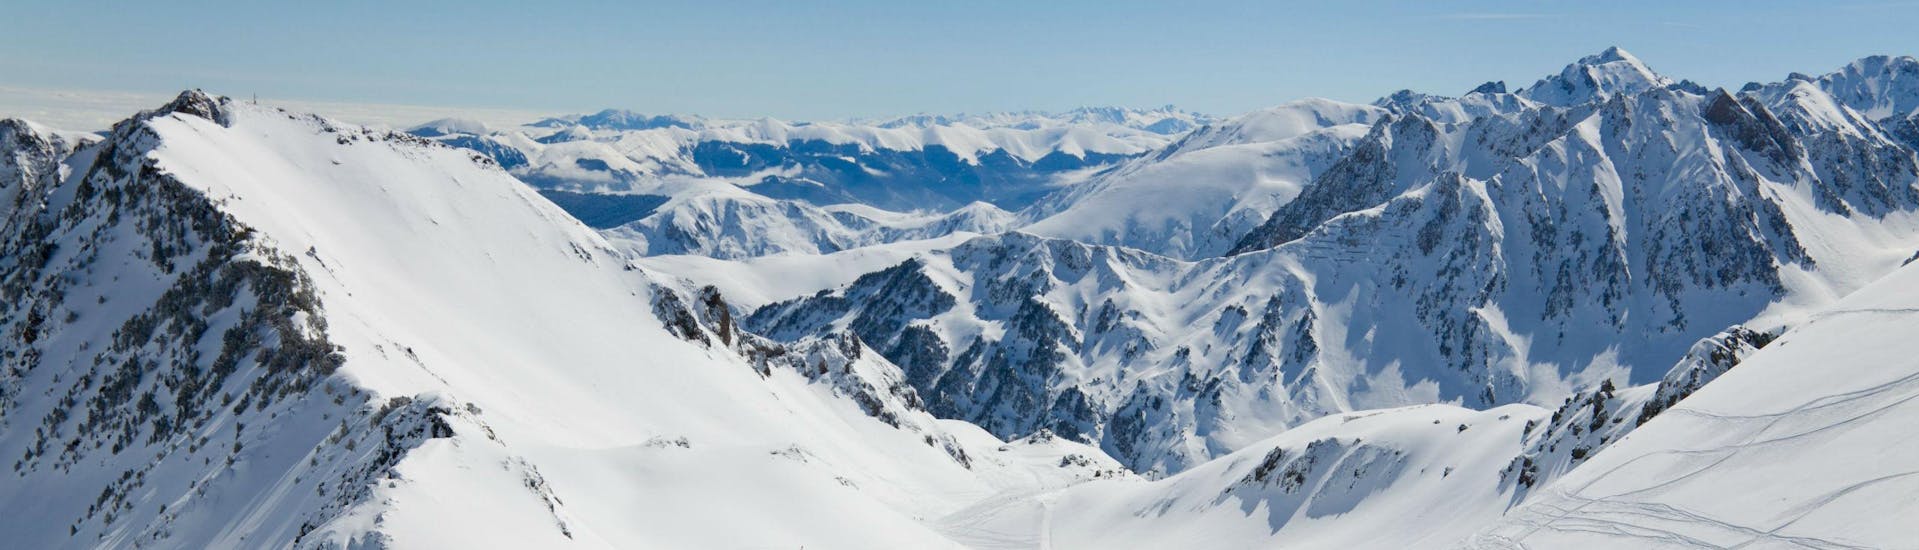 Un snowboarder está admirando la impresionante vista de los Pirineos nevados desde una de las pistas de esquí de La Mongie - Village, donde las escuelas de esquí locales ofrecen una amplia gama de clases de esquí.